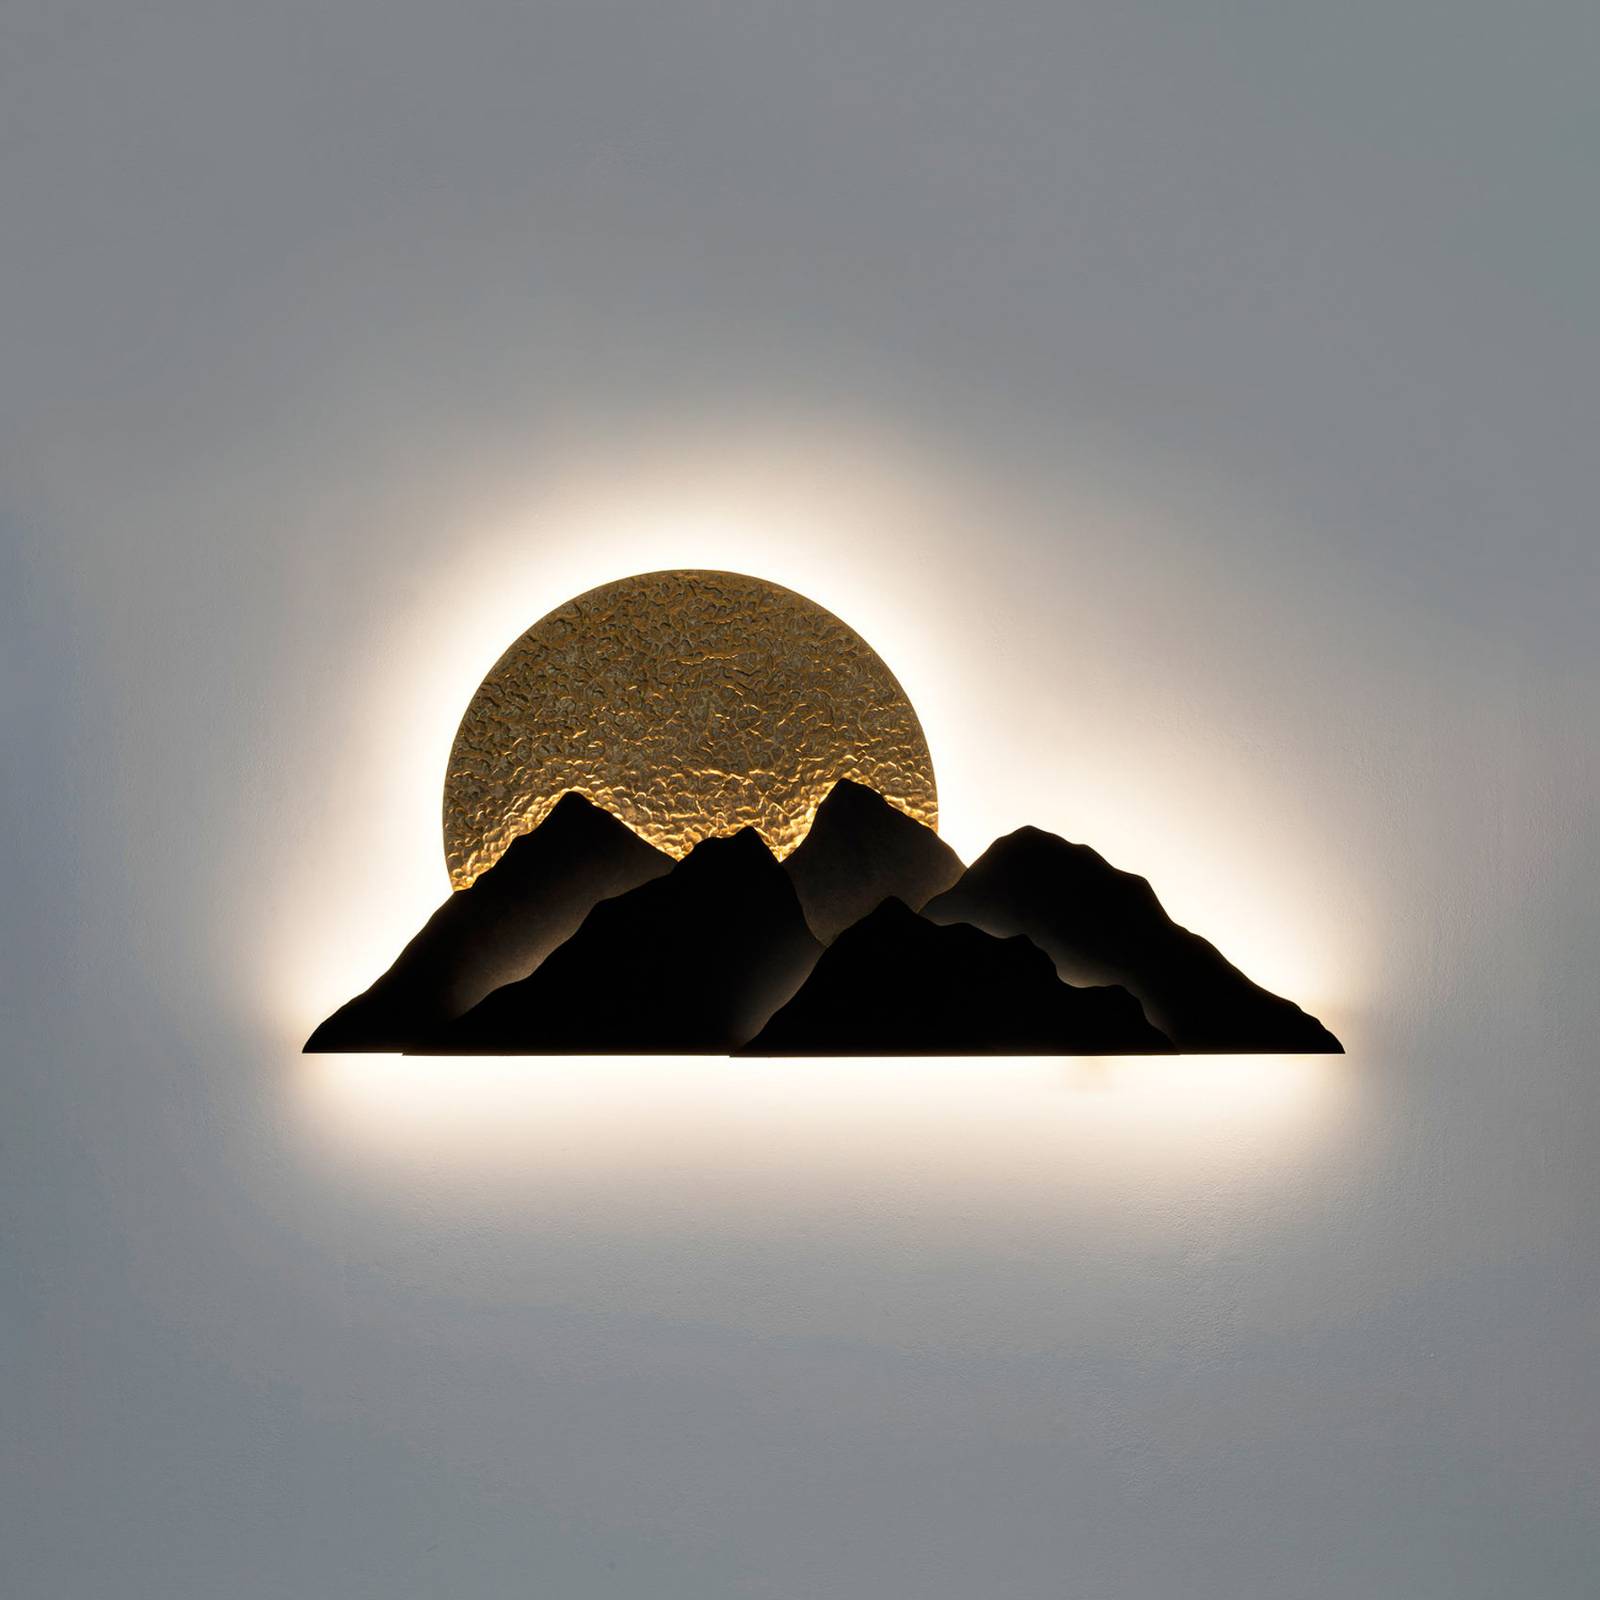 Holländer montagna led fali lámpa, barna/arany színű, szélesség 150 cm